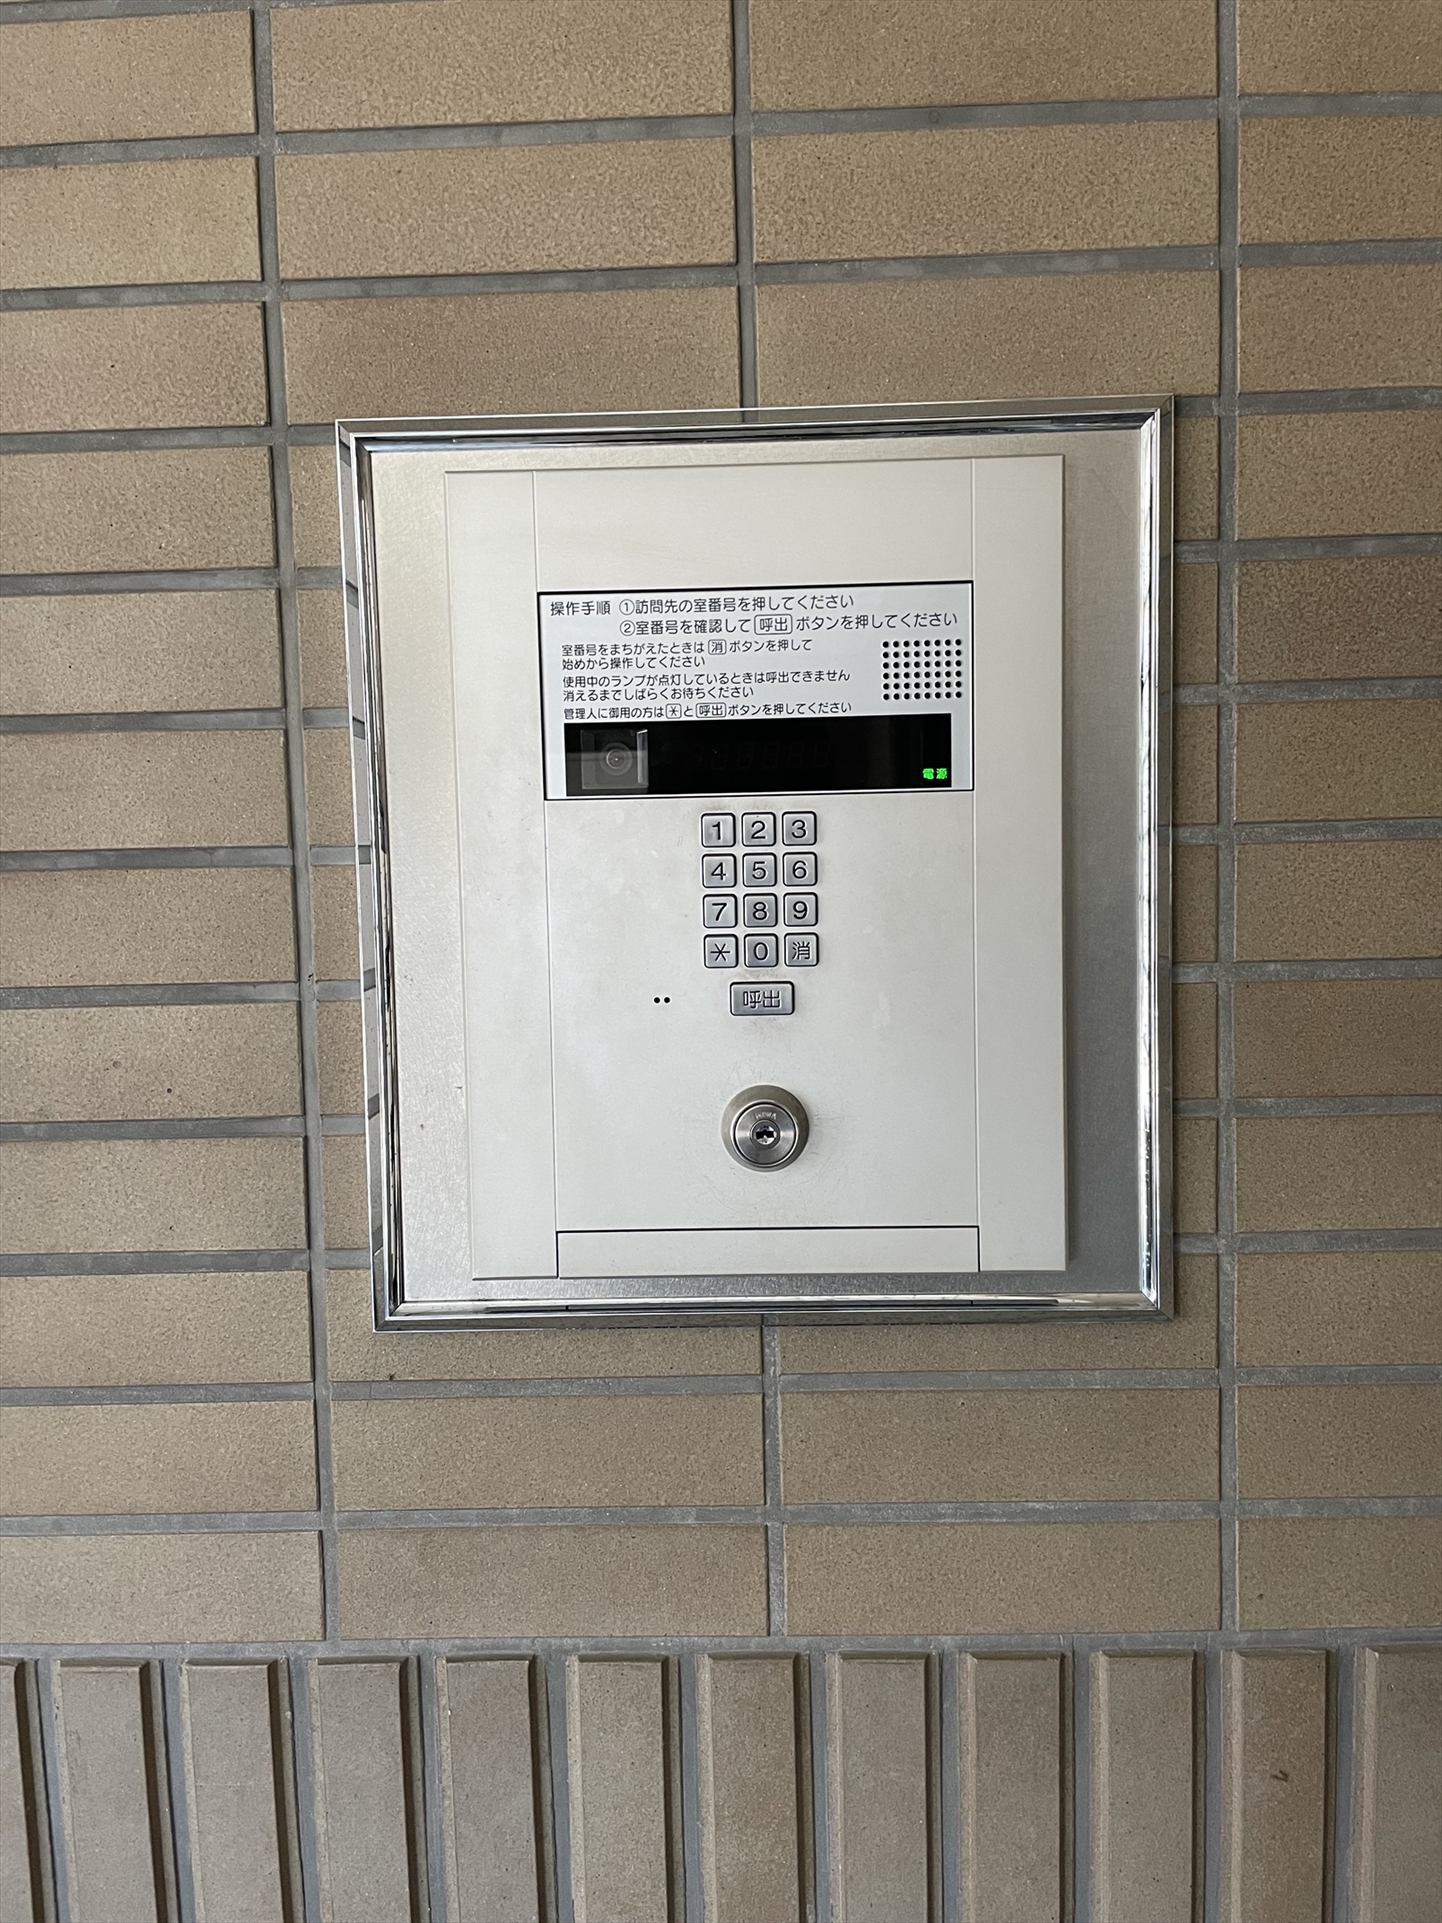 モニター付きオートロックで安心のセキュリティ。(2022年5月)